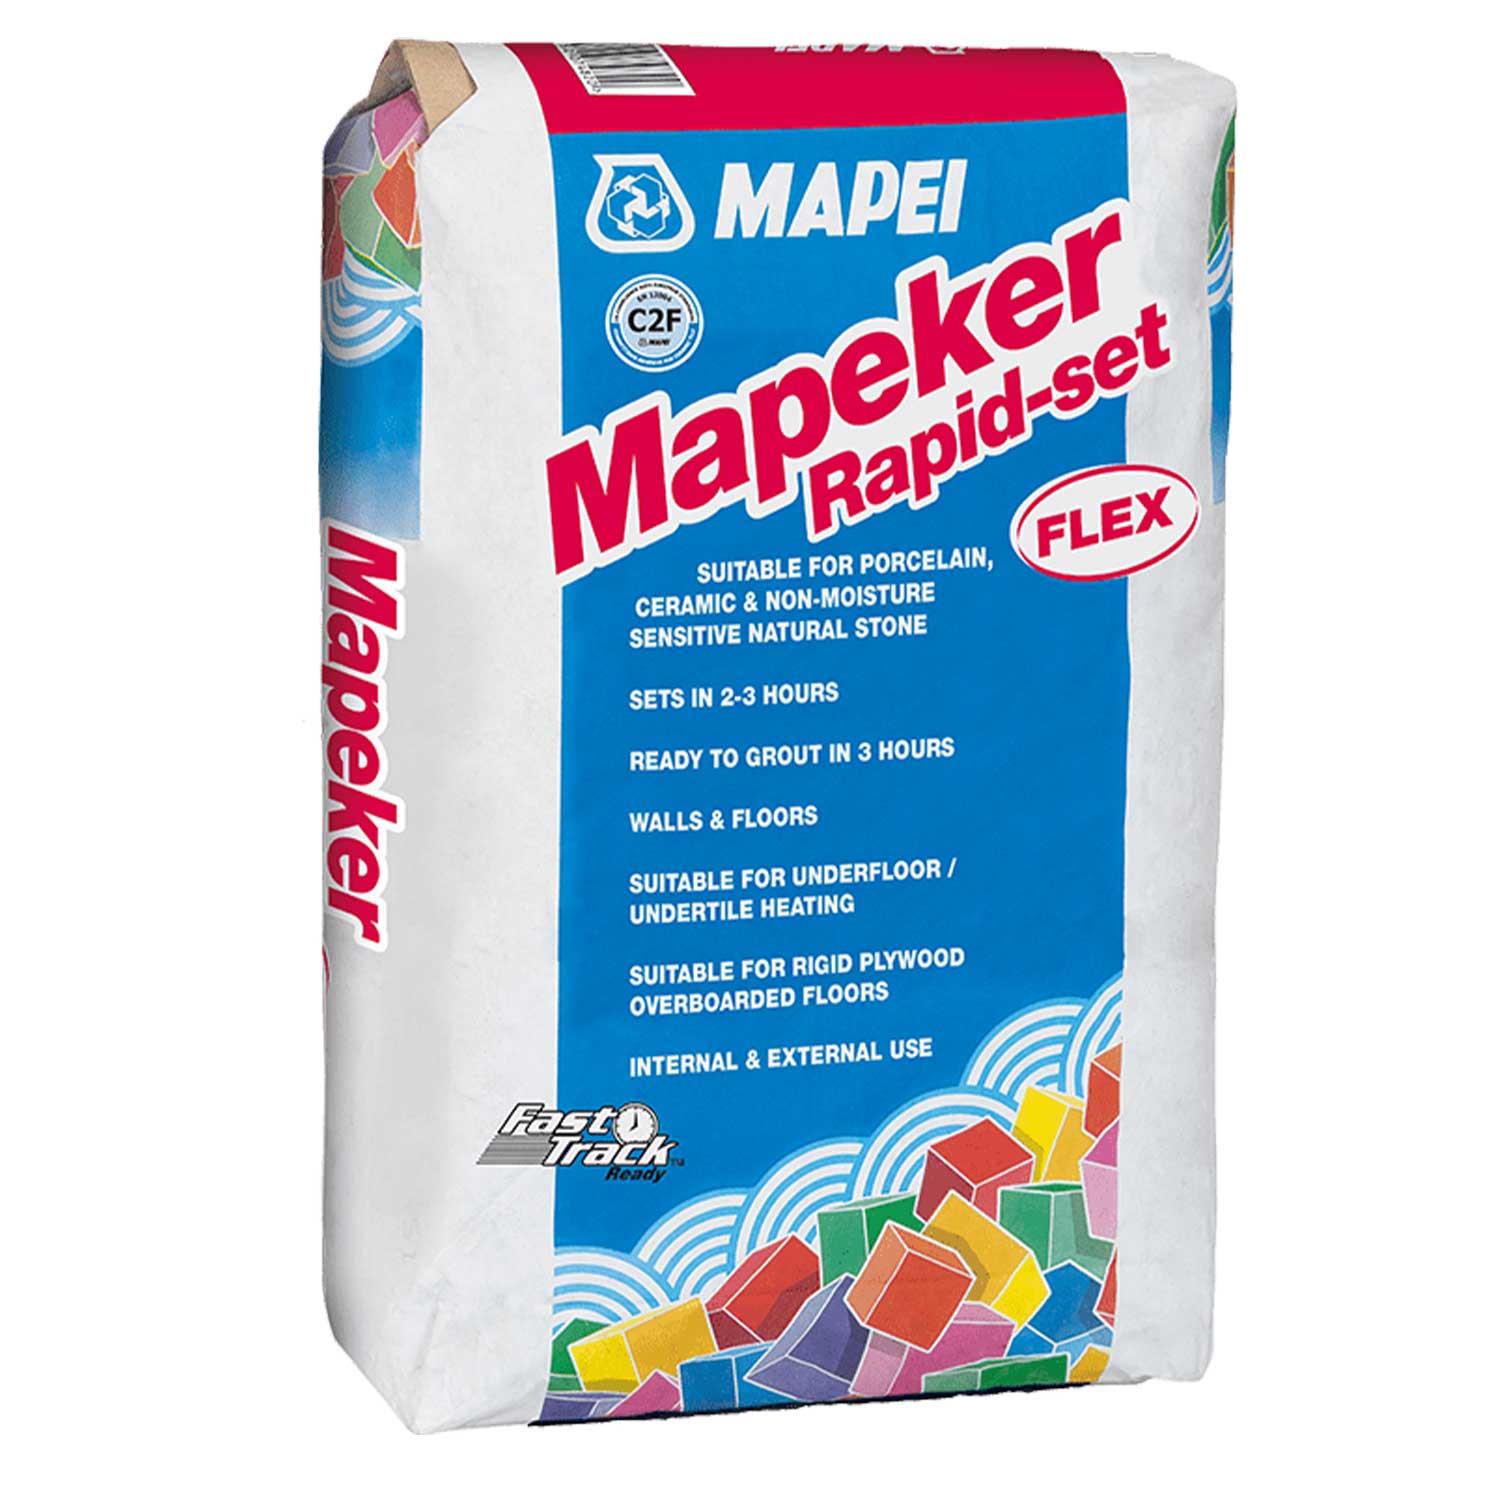 Mapei Mapeker Rapid-Set Flex Adhesive